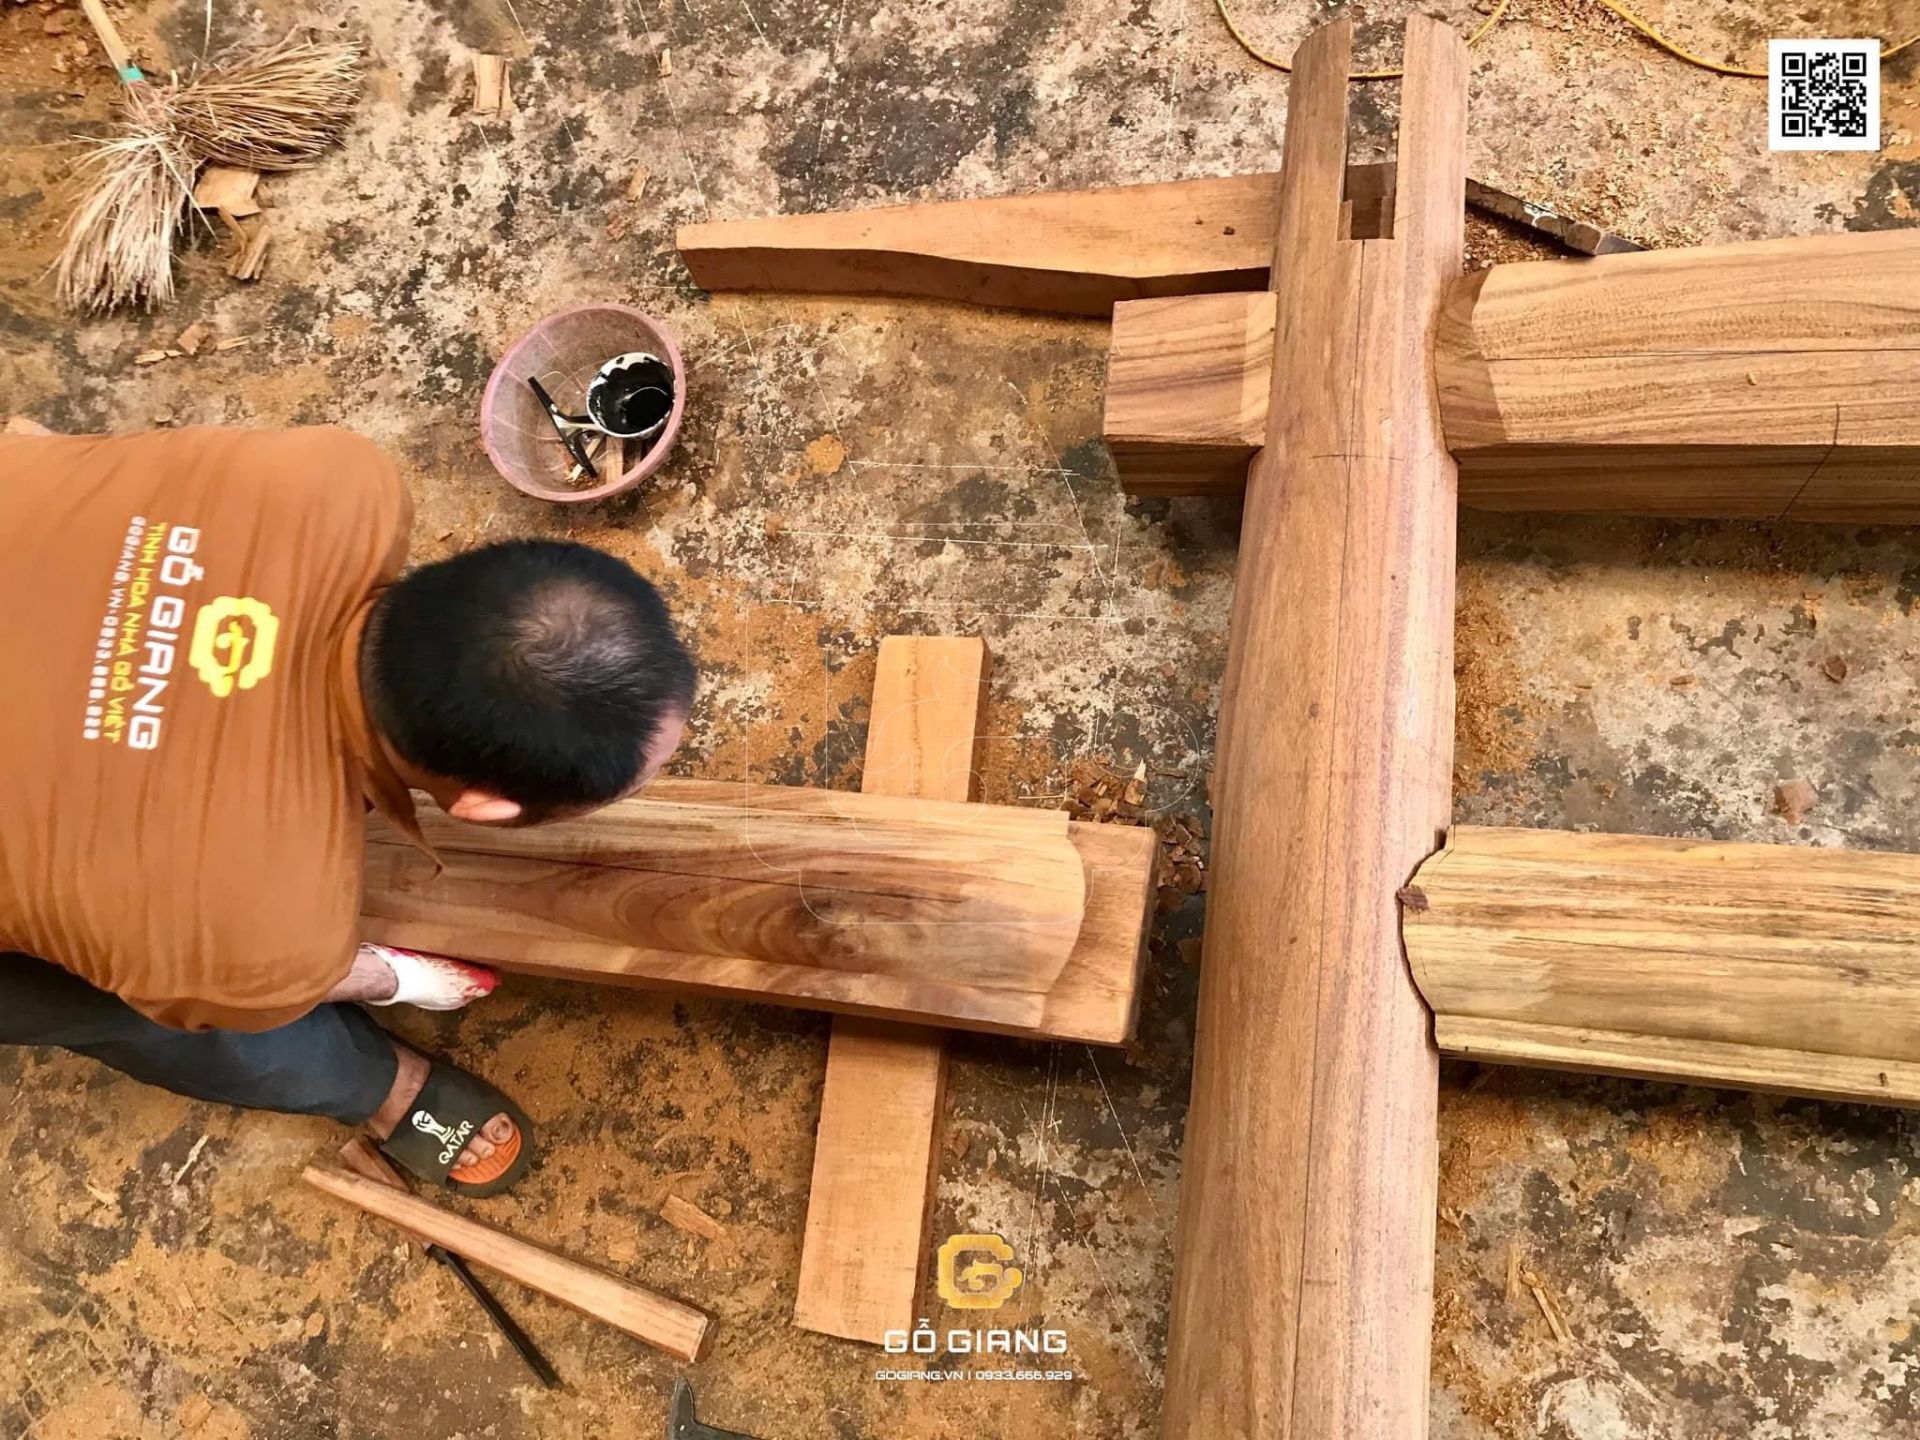 SÀM - Một kĩ thuật làm mộng nhà gỗ cổ truyền